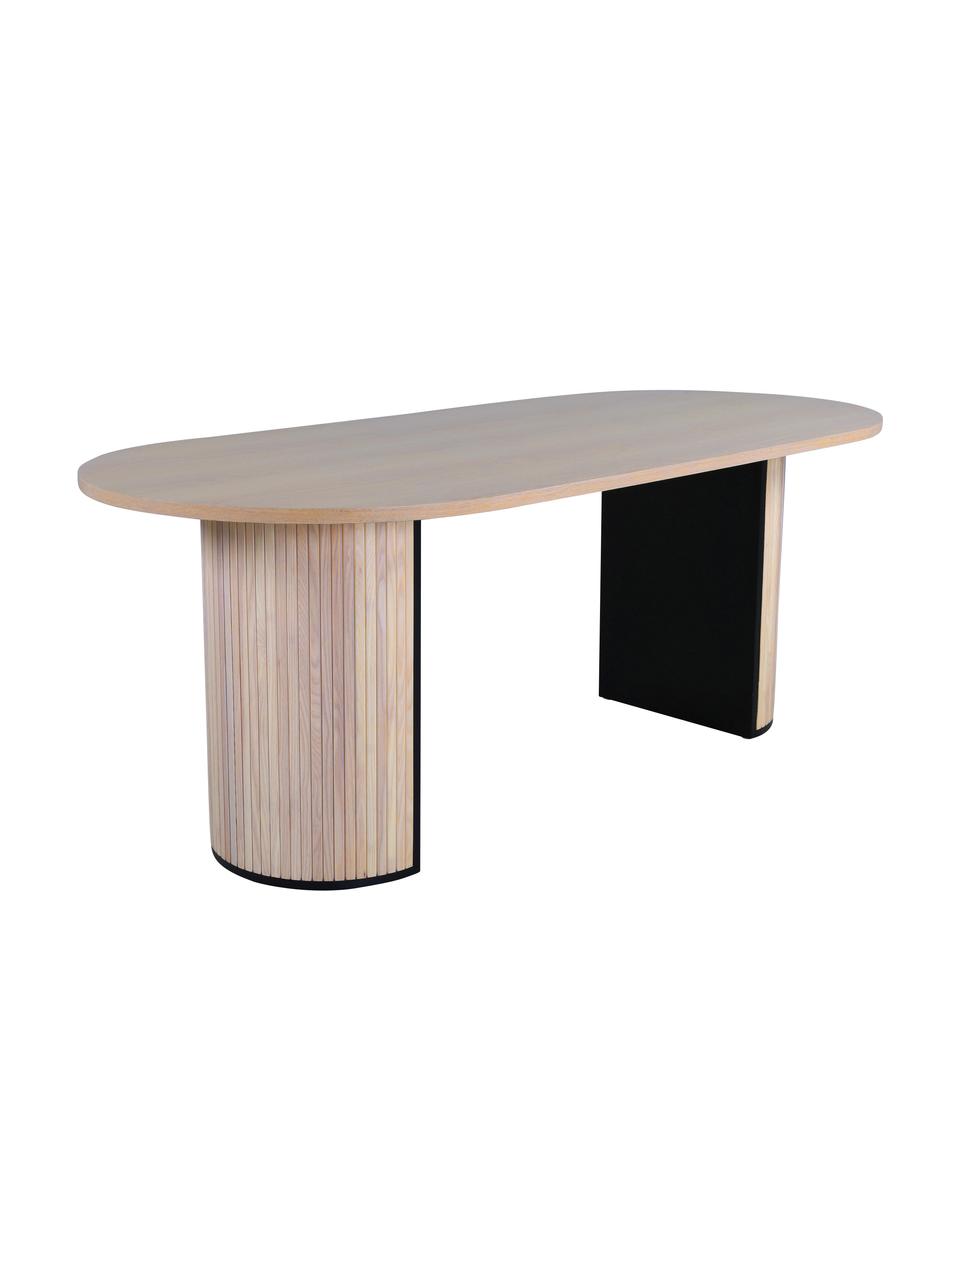 Table à manger ovale avec placage en chêne brossé blanc Bianca, 200 x 90 cm, Beige clair, noir, larg. 200 x prof. 90 cm